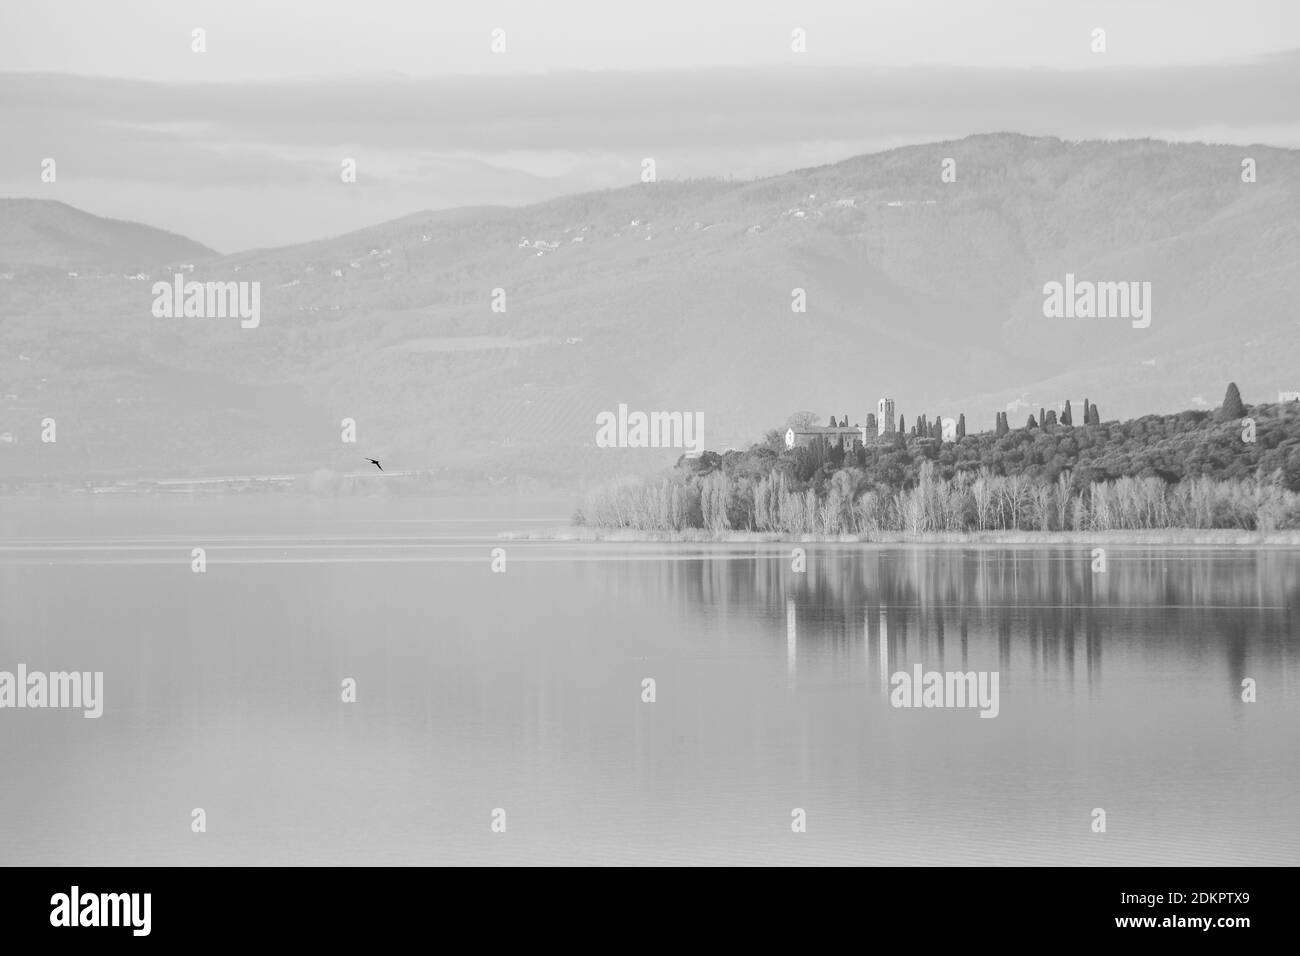 Une vue parfaitement symétrique d'un lac, avec des réflexions sur l'eau Banque D'Images